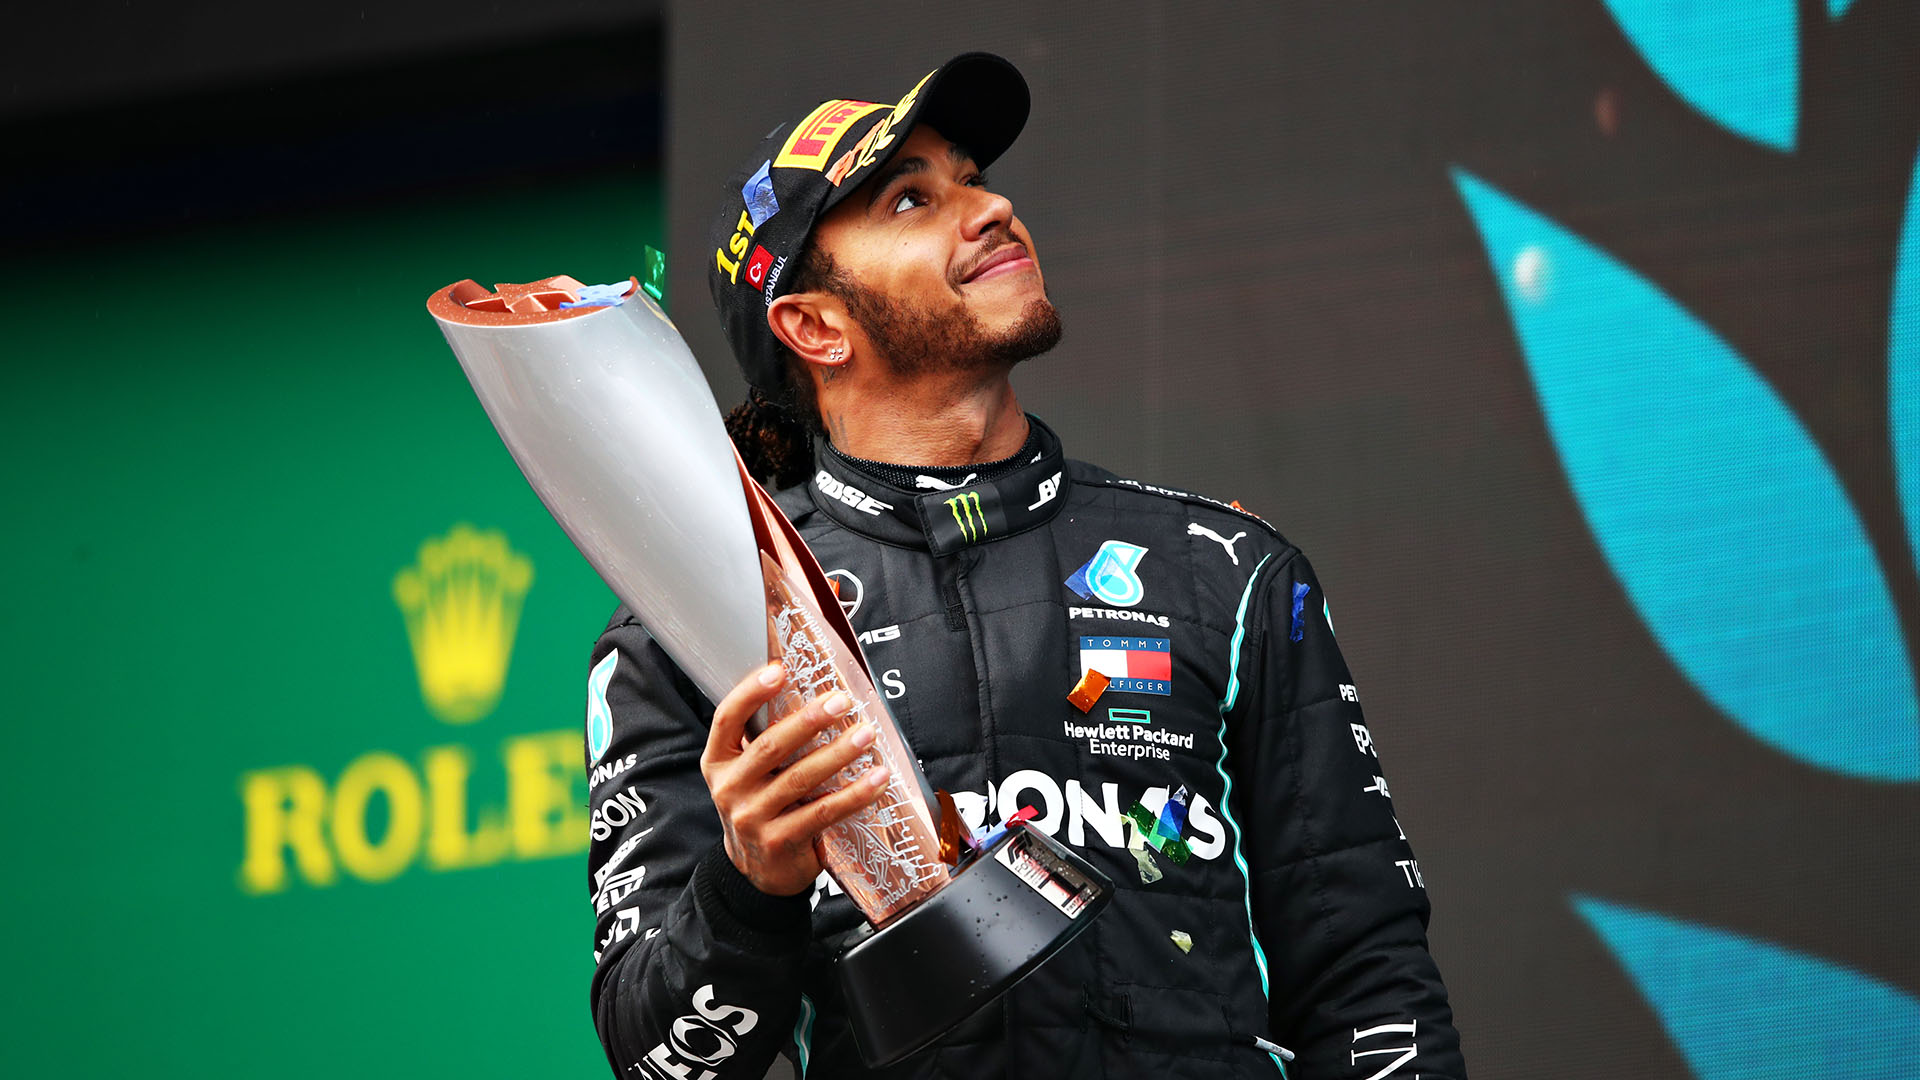 F1 Hamilton vince il suo 7° campionato del mondo vincendo in Turchia eguagliato Schumacher